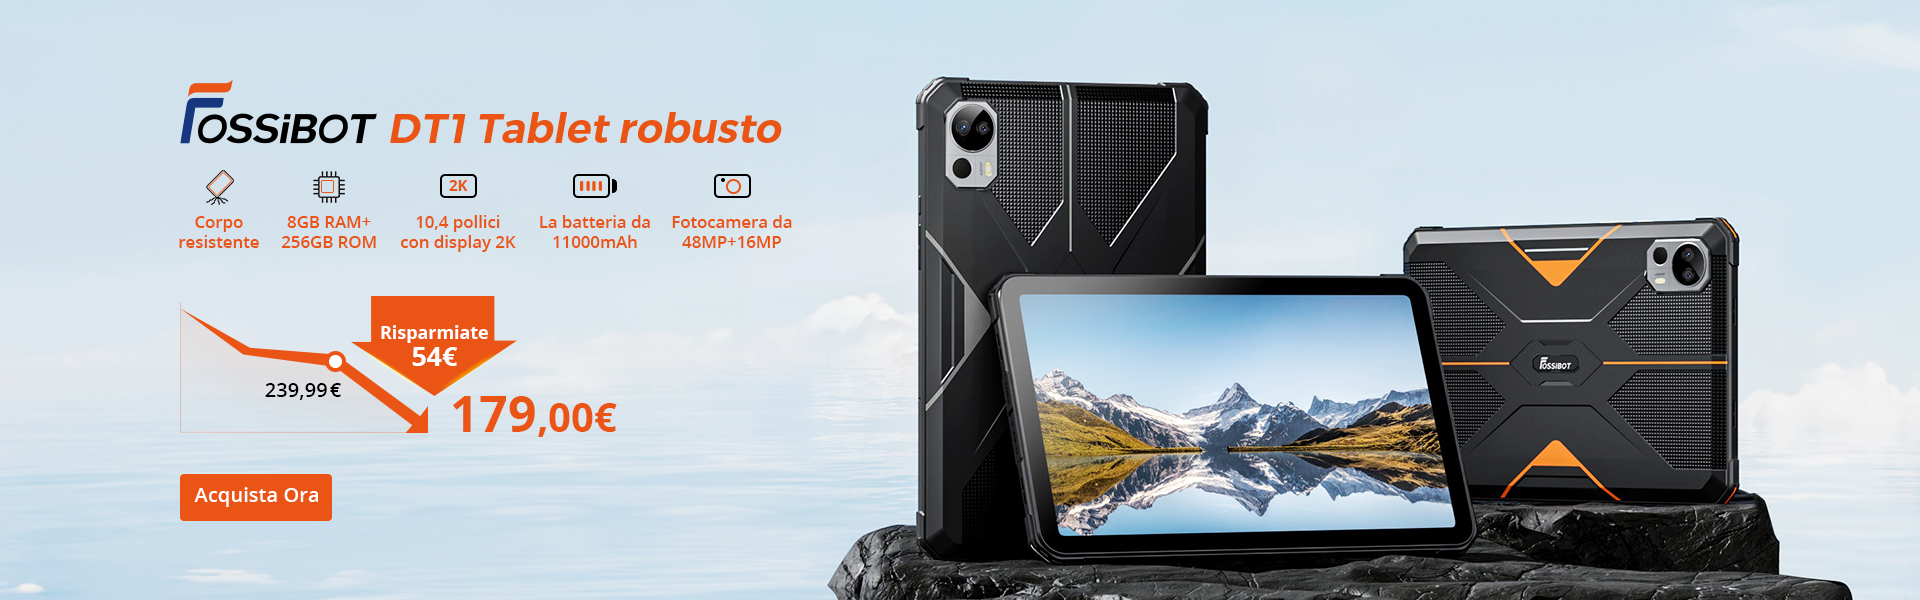 Esplora il Tablet Robusto FOSSiBOT DT1 - Risparmia 54 € | Solo 179,99 € per un Compagno Resistente all'Outdoor! – Promozione Geekmall.it